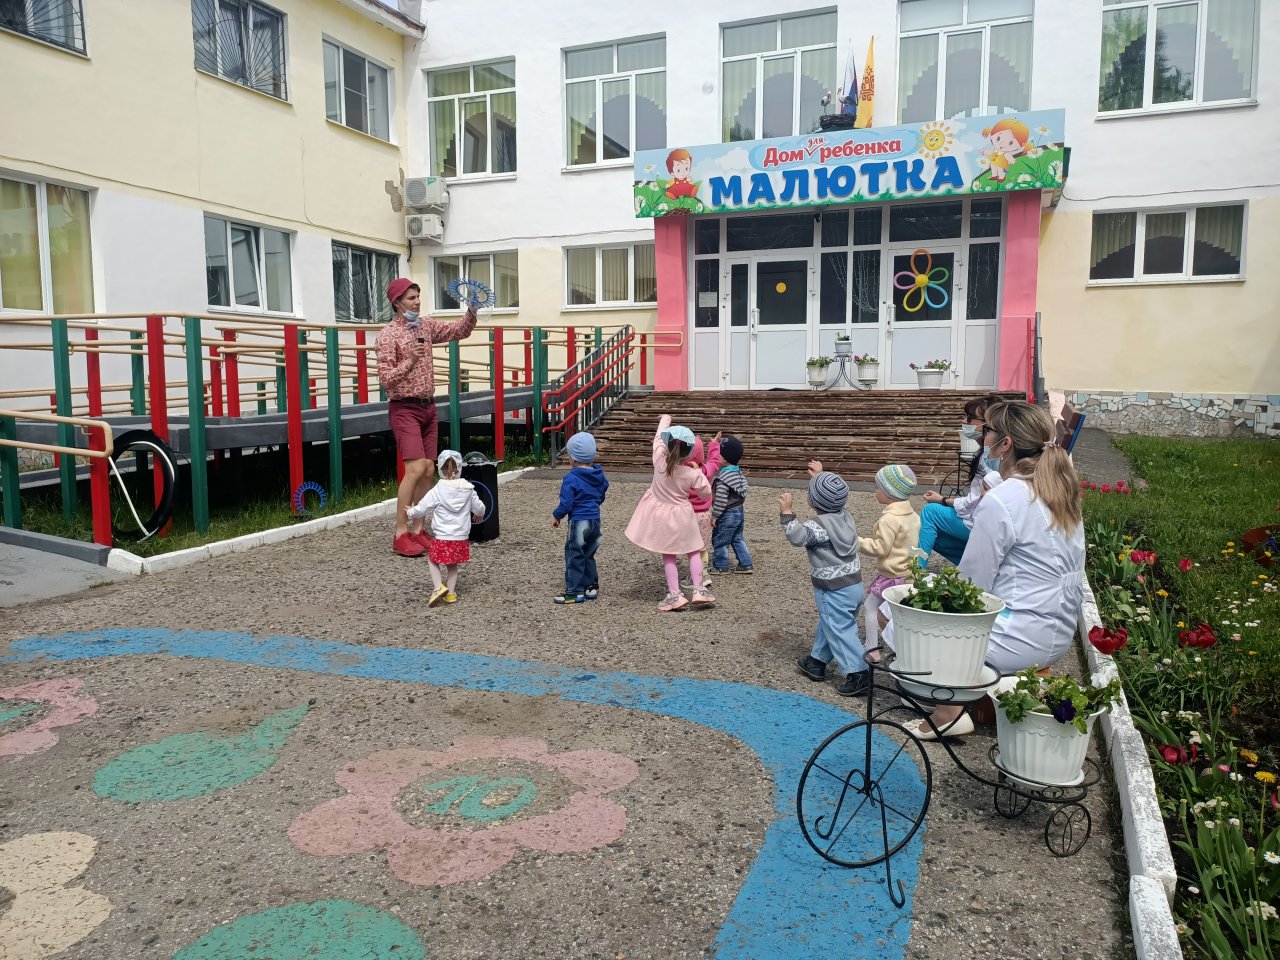 Фото: Малютка, дом ребёнка, просп. Мира, 36А, Чебоксары — Яндекс Карты